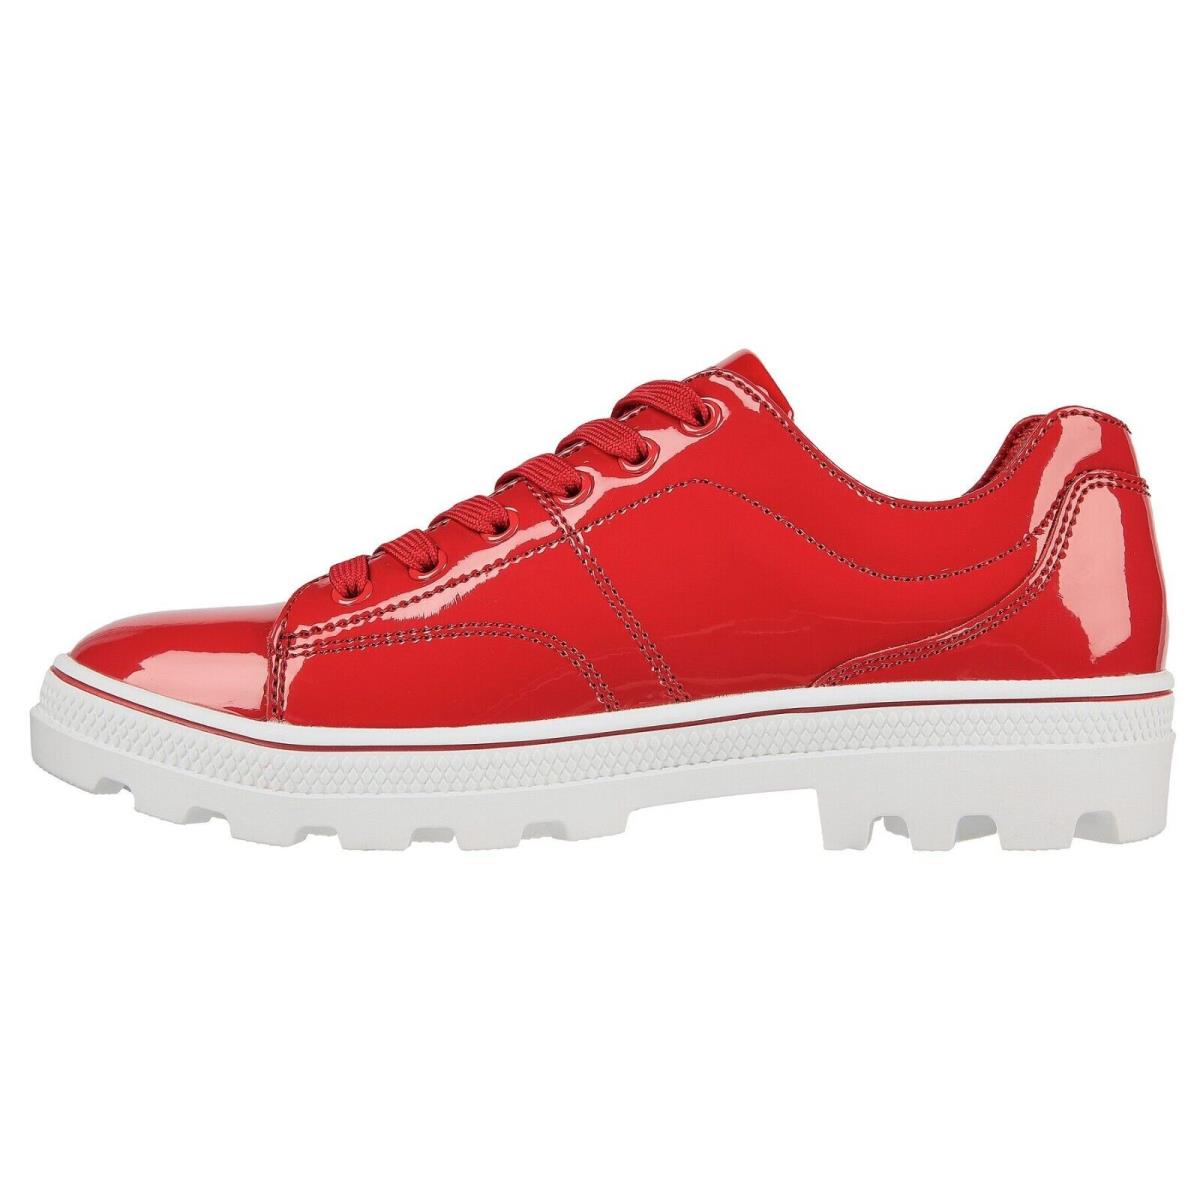 Skechers shoes Roadies - Red 9